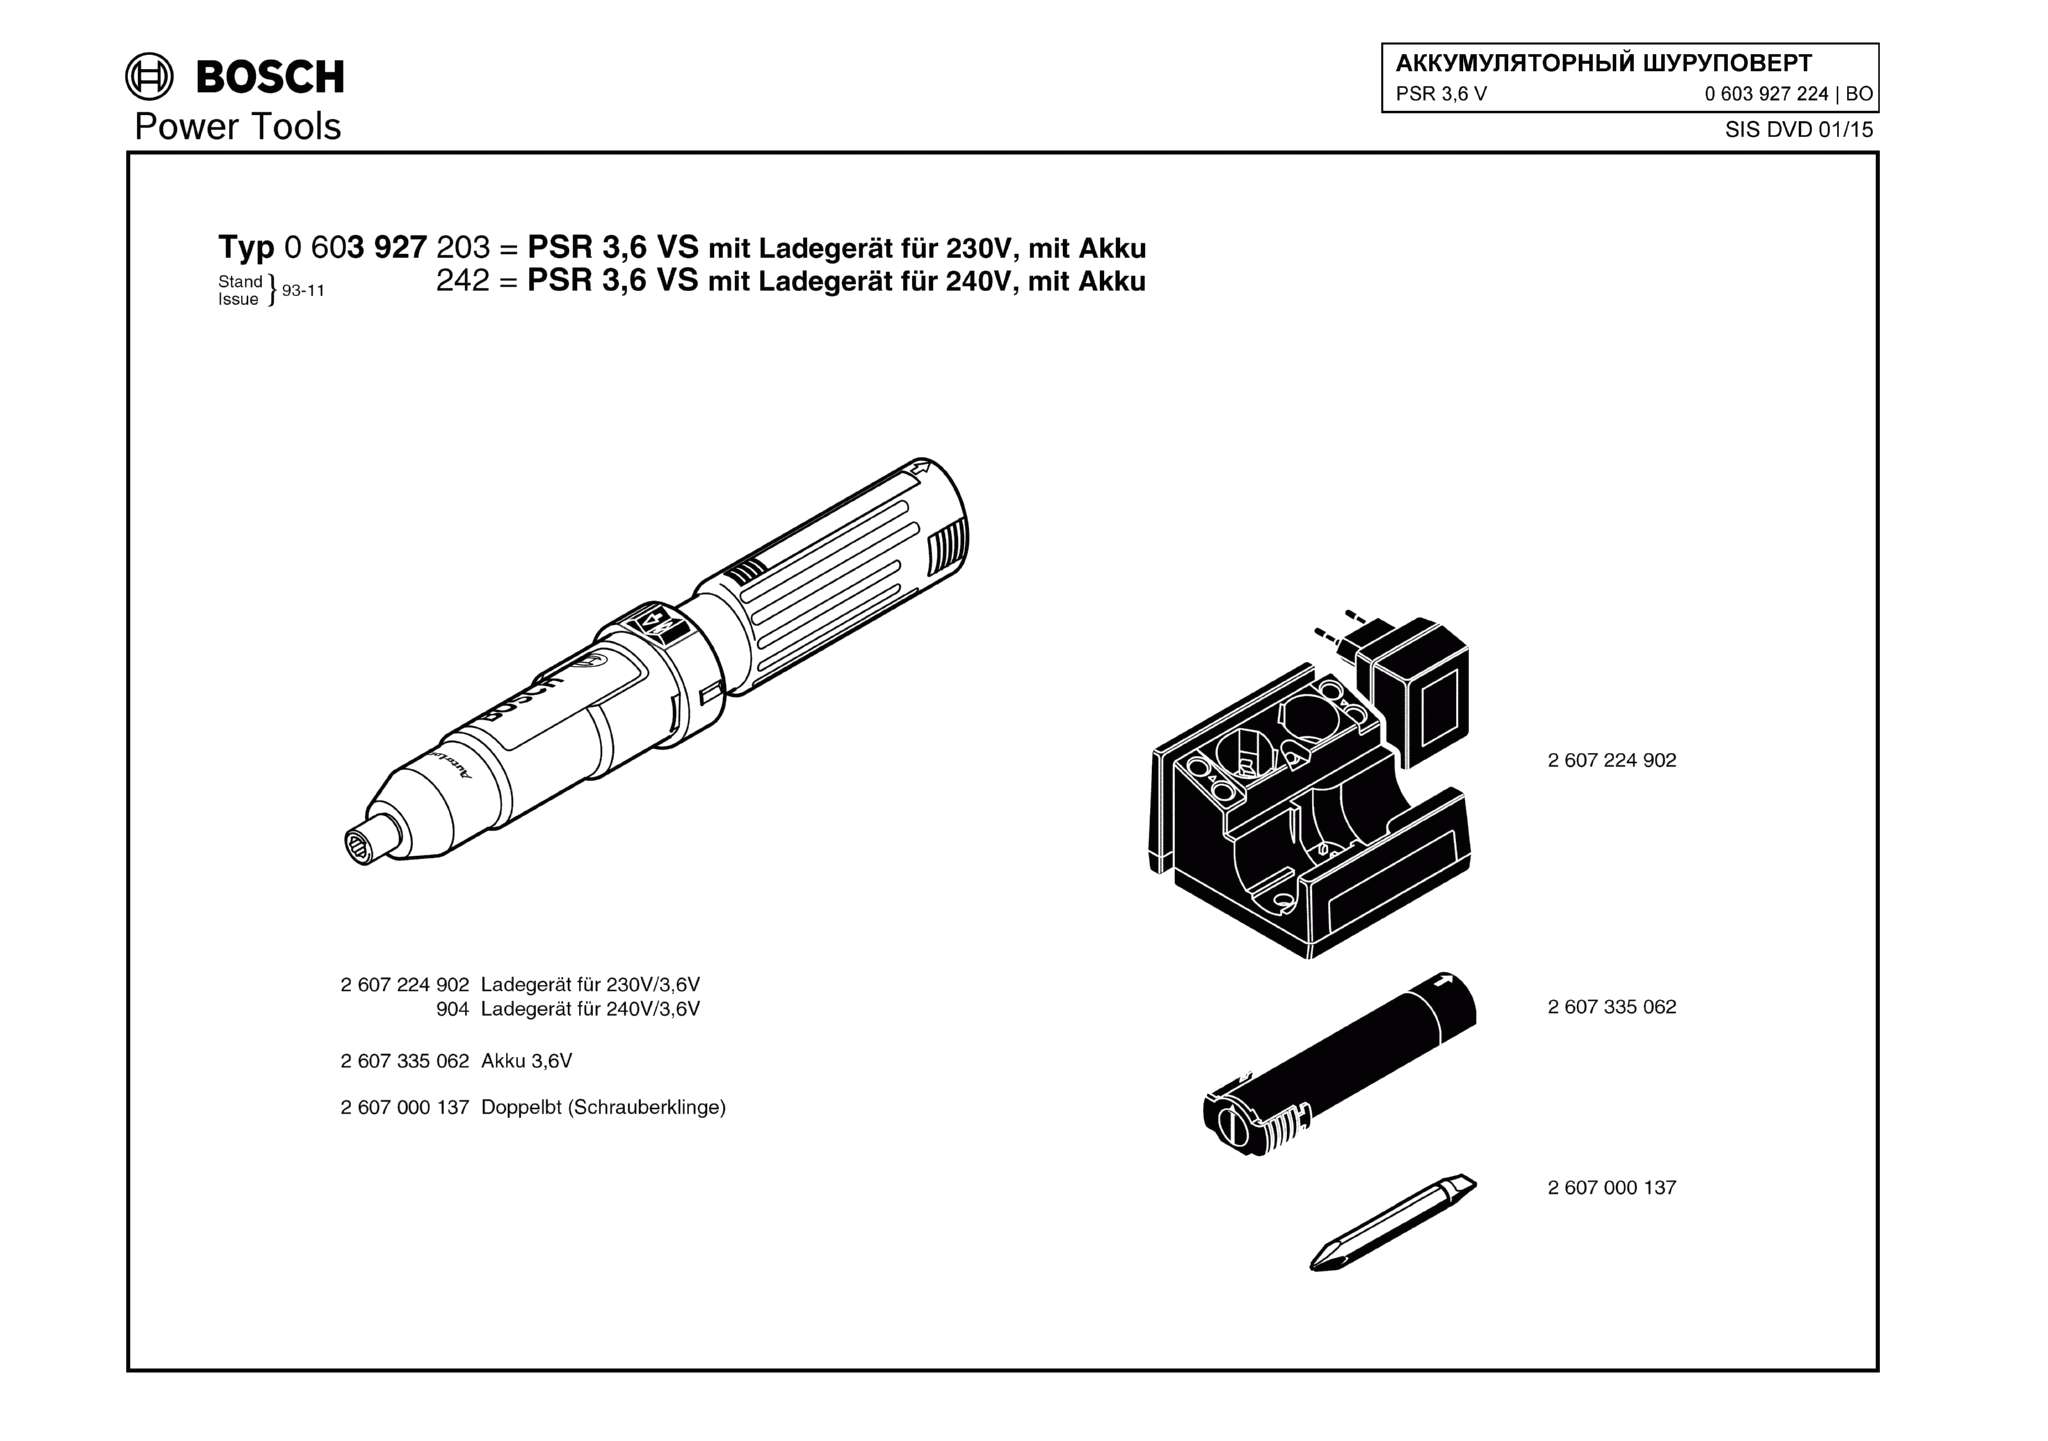 Запчасти, схема и деталировка Bosch PSR 3,6 V (ТИП 0603927224)